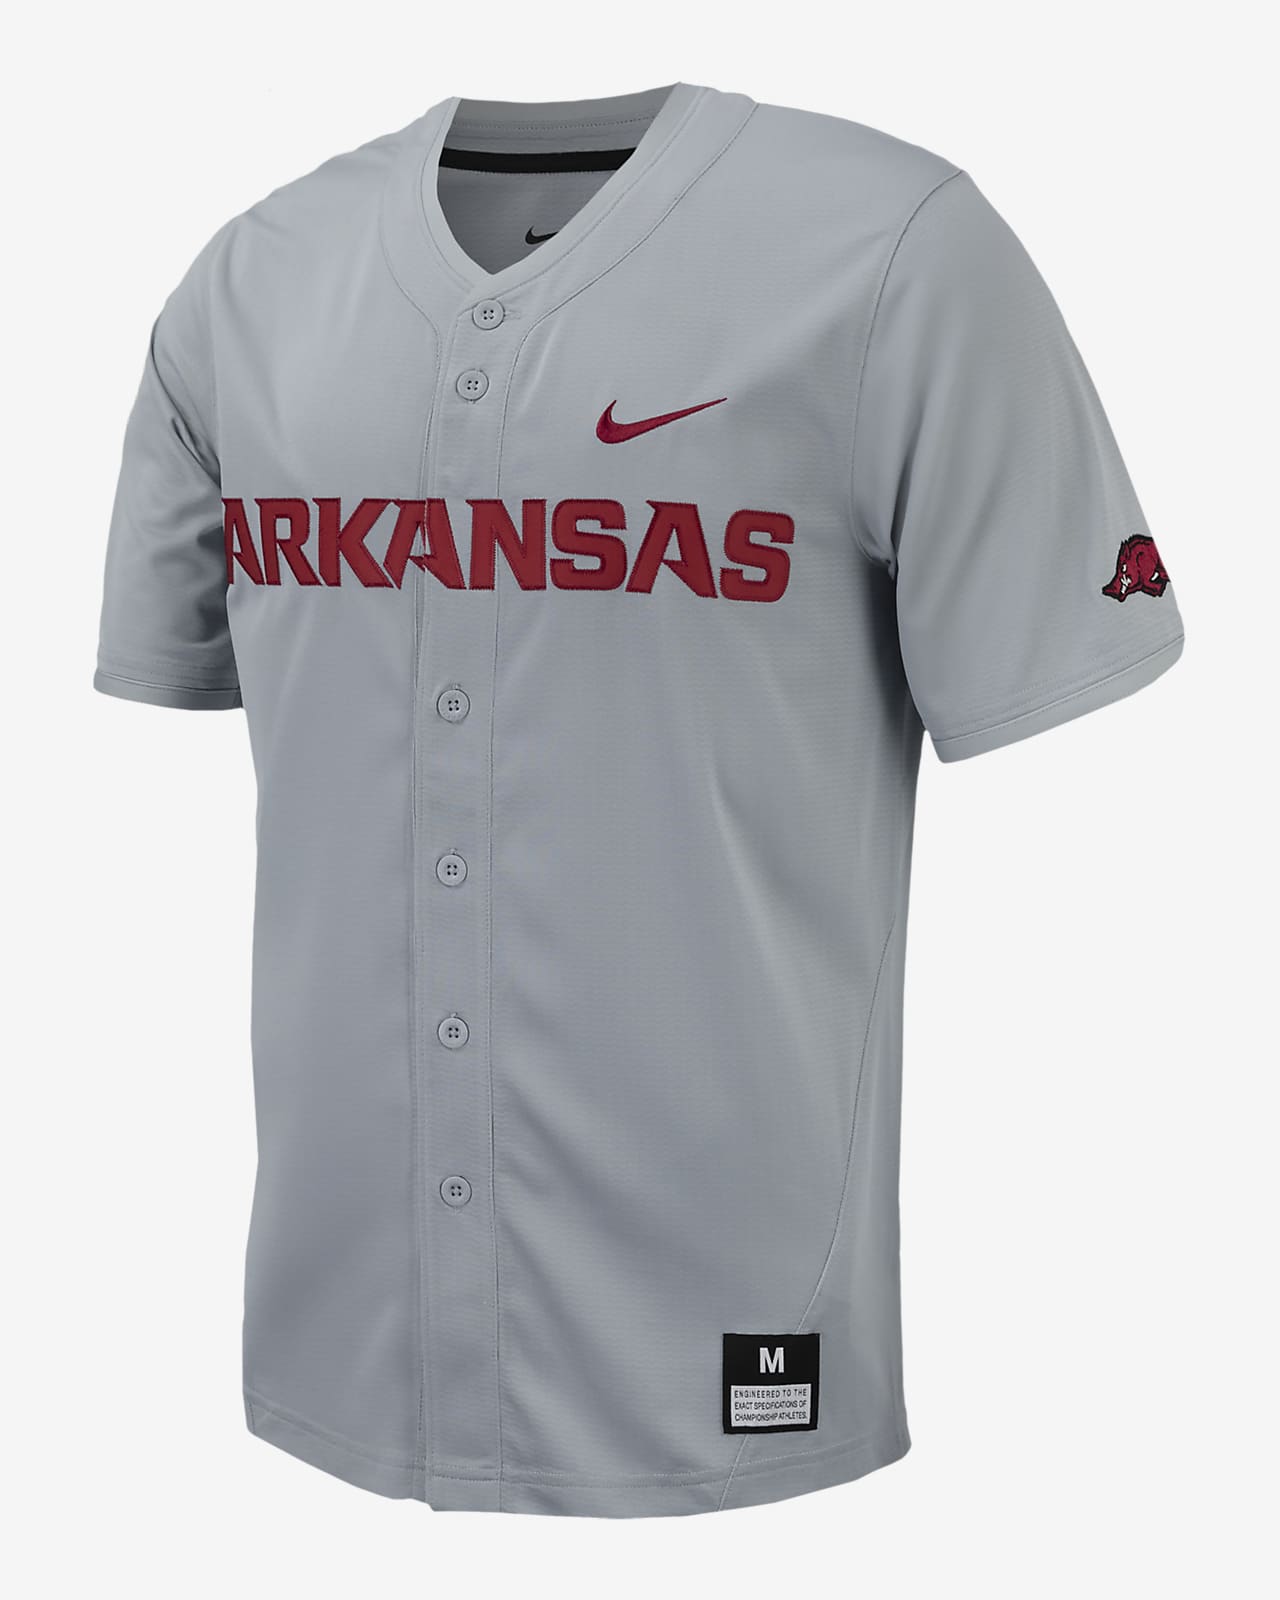 Jersey de béisbol universitario Nike Replica para hombre Arkansas